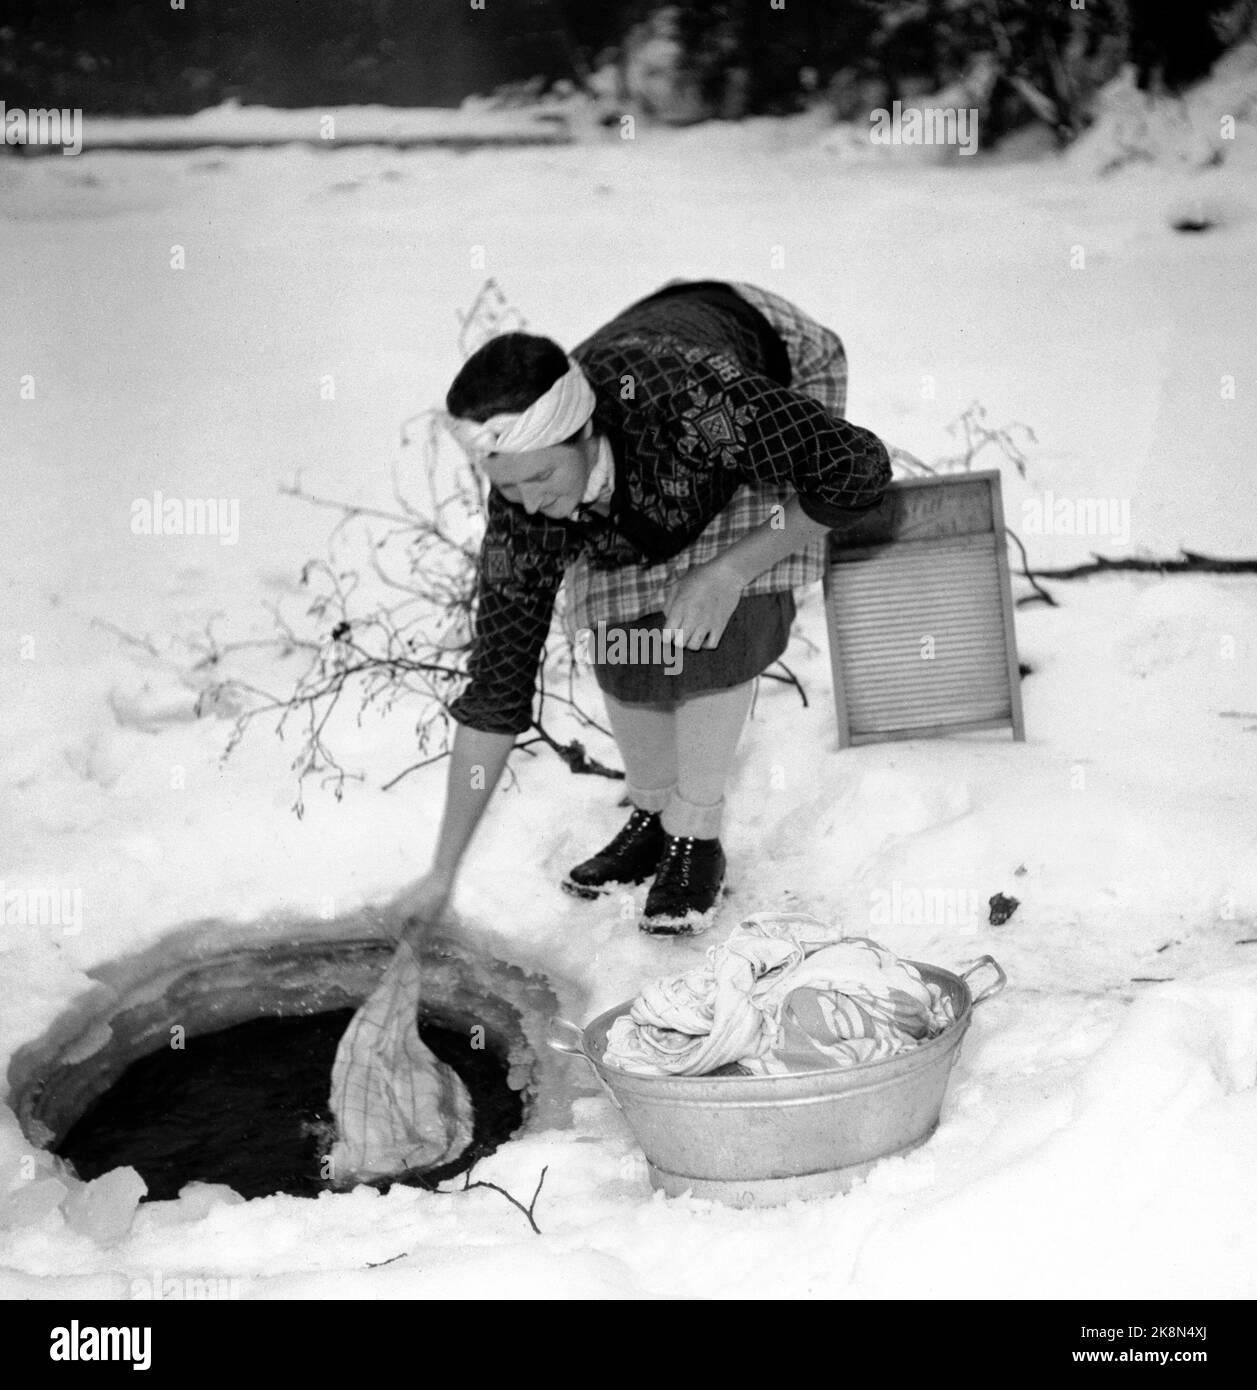 HEDMARK vinteren 1948. Vannmangel på Østlandet etter tørkesommeren 1947.  Gårdsbrukene må hente vann i elvene eller få tilkjørt vann Fra meieriene.  Her vasker en kvinne klær i en bekk, gjennom et hull